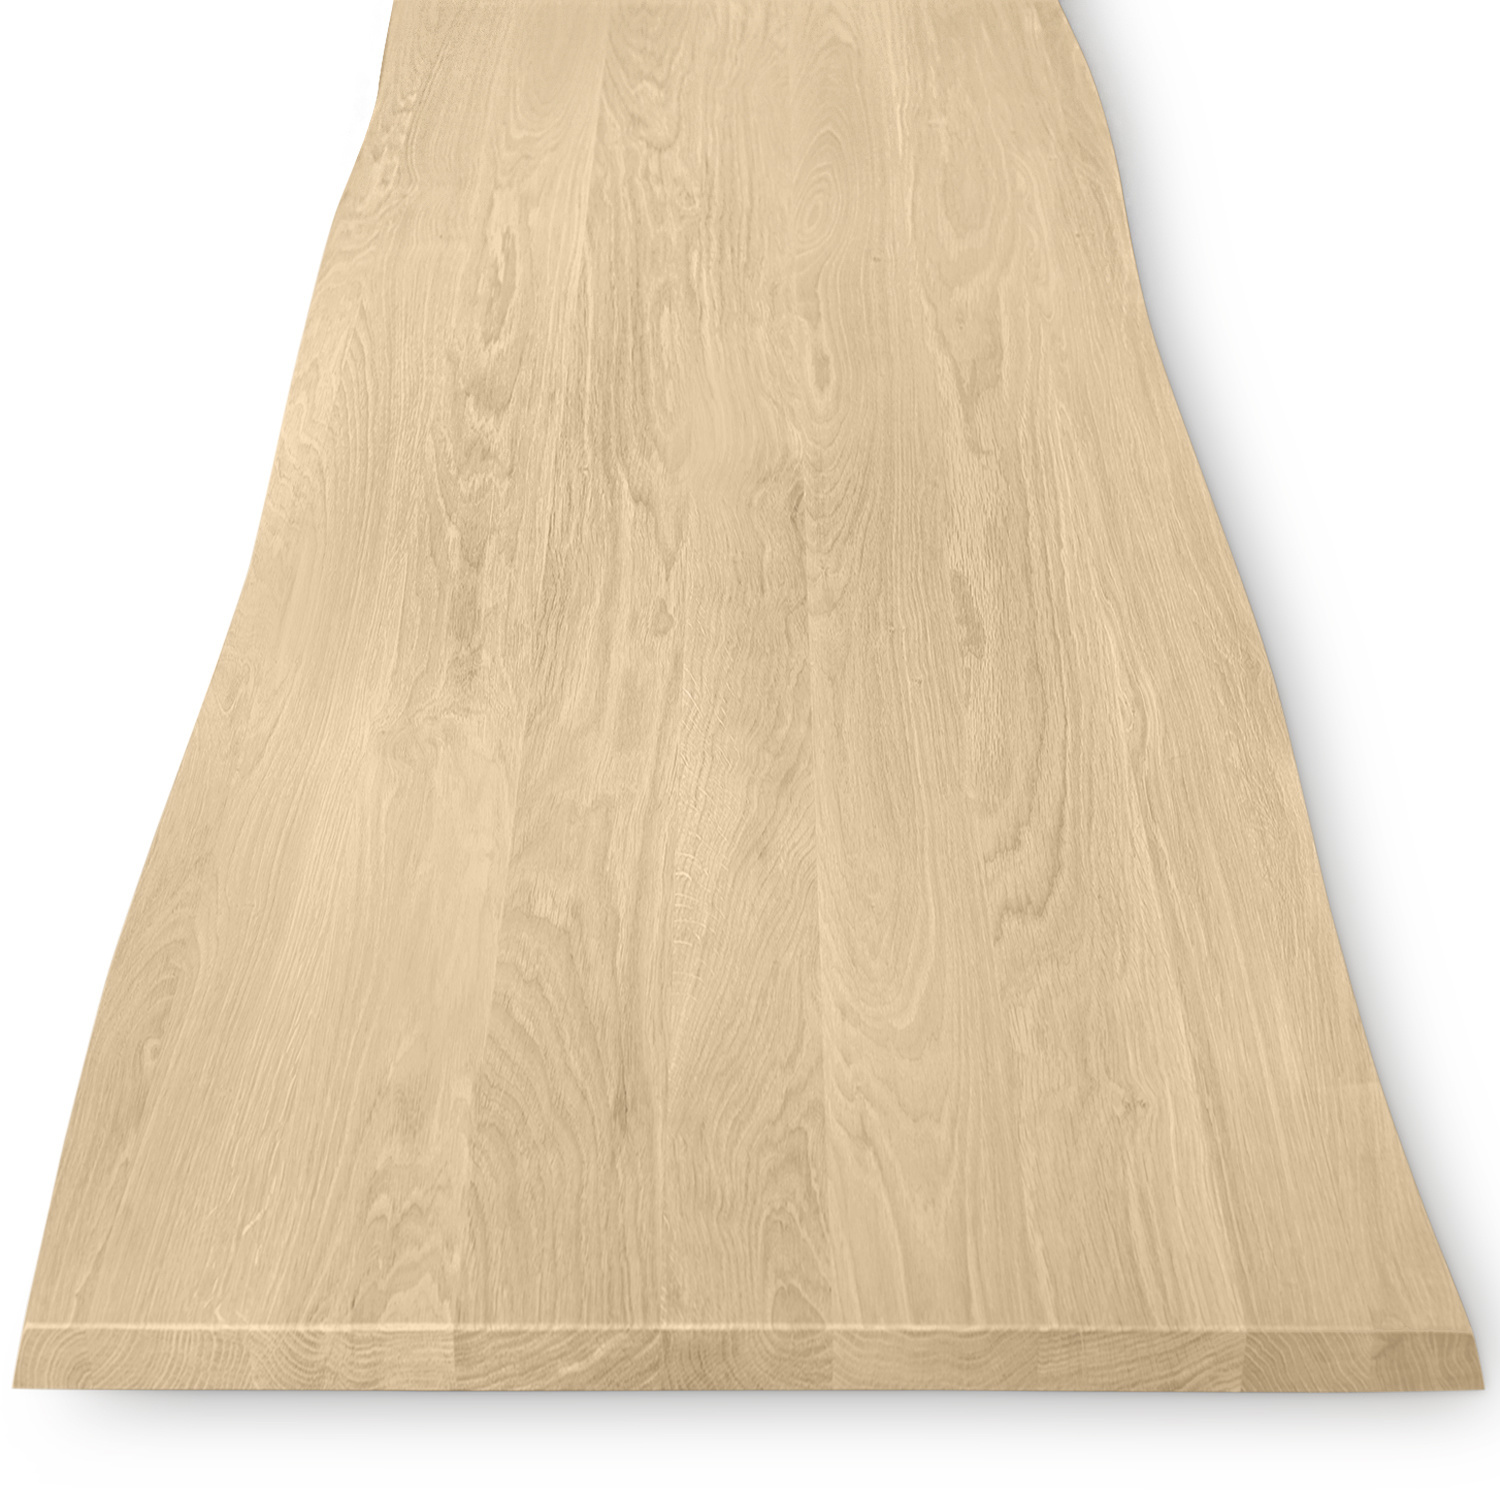  Eiken boomstam tafelblad op maat - 2,7 cm dik (1-laag) - met boomstam rand / waankant look - foutvrij Europees eikenhout - met brede lamellen (circa 10-12 cm) - verlijmd kd 8-12% - 50-120x50-248 cm